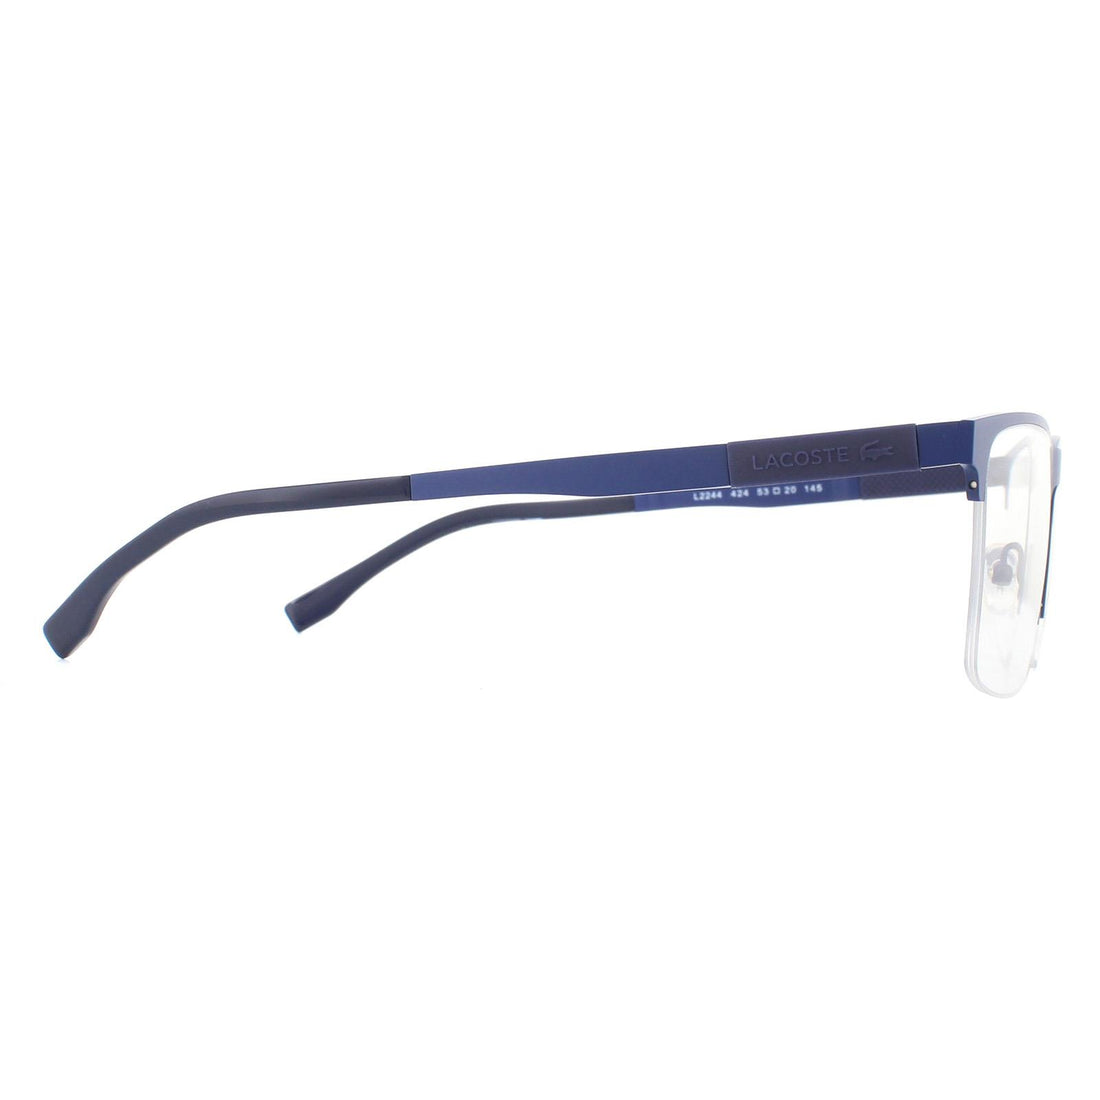 Lacoste Glasses Frames L2244 424 Matte Blue